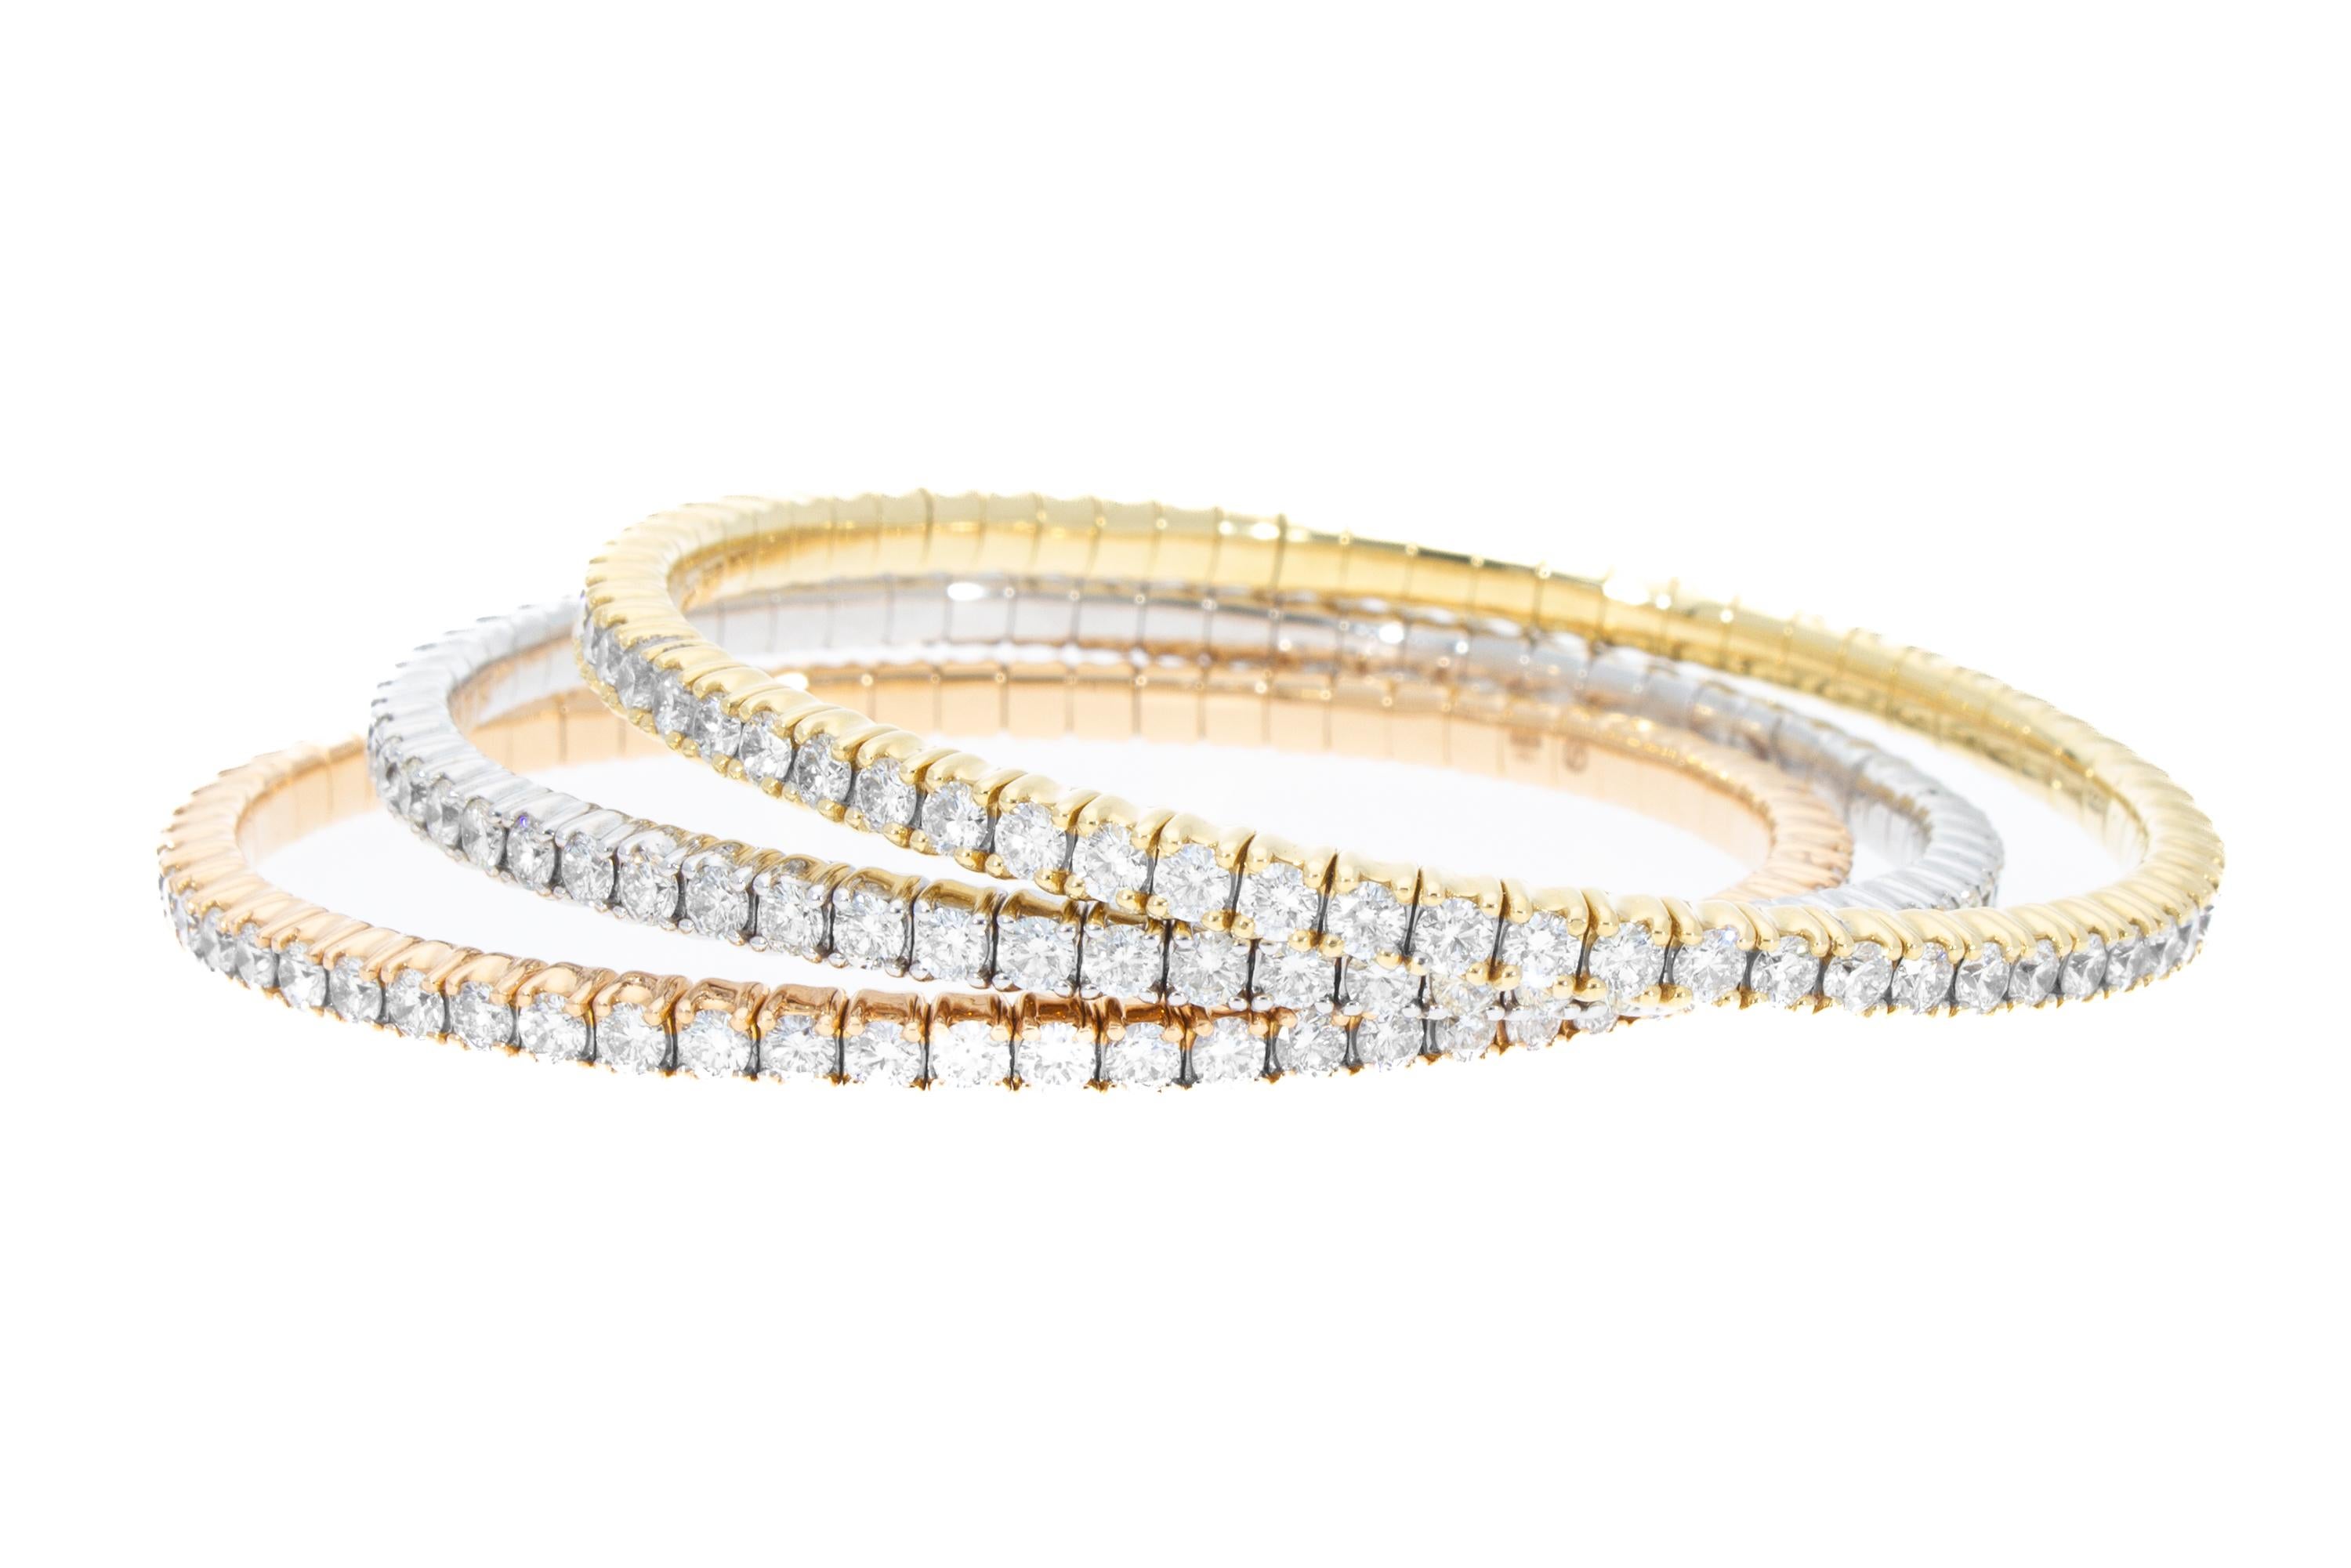 Le Tris est composé de trois bracelets, dans les trois couleurs de l'or.
Les bracelets sont élastiques, modèle tennis, sans fermeture, il est également possible de les porter séparément. 
Les trois bracelets comptent au total 192 diamants, pour un